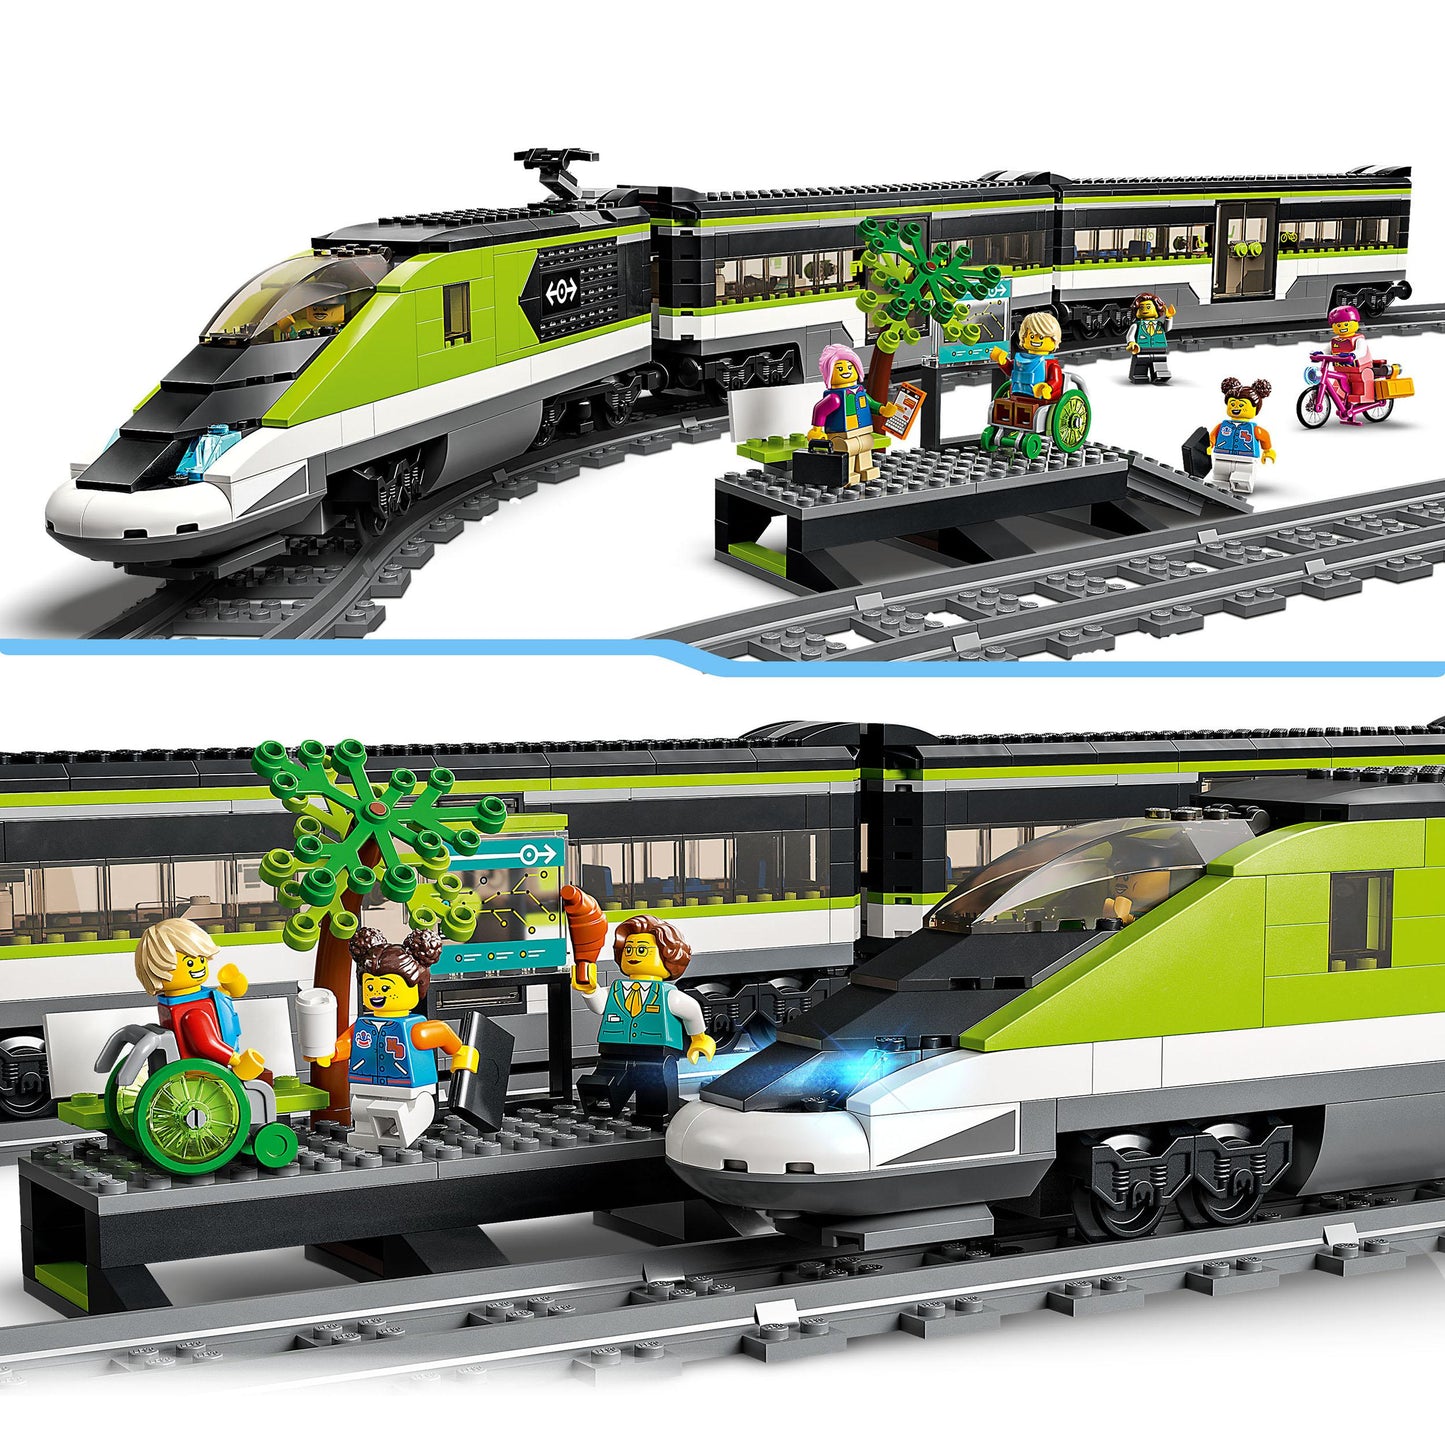 60337 LEGO City - Treno passeggeri espresso